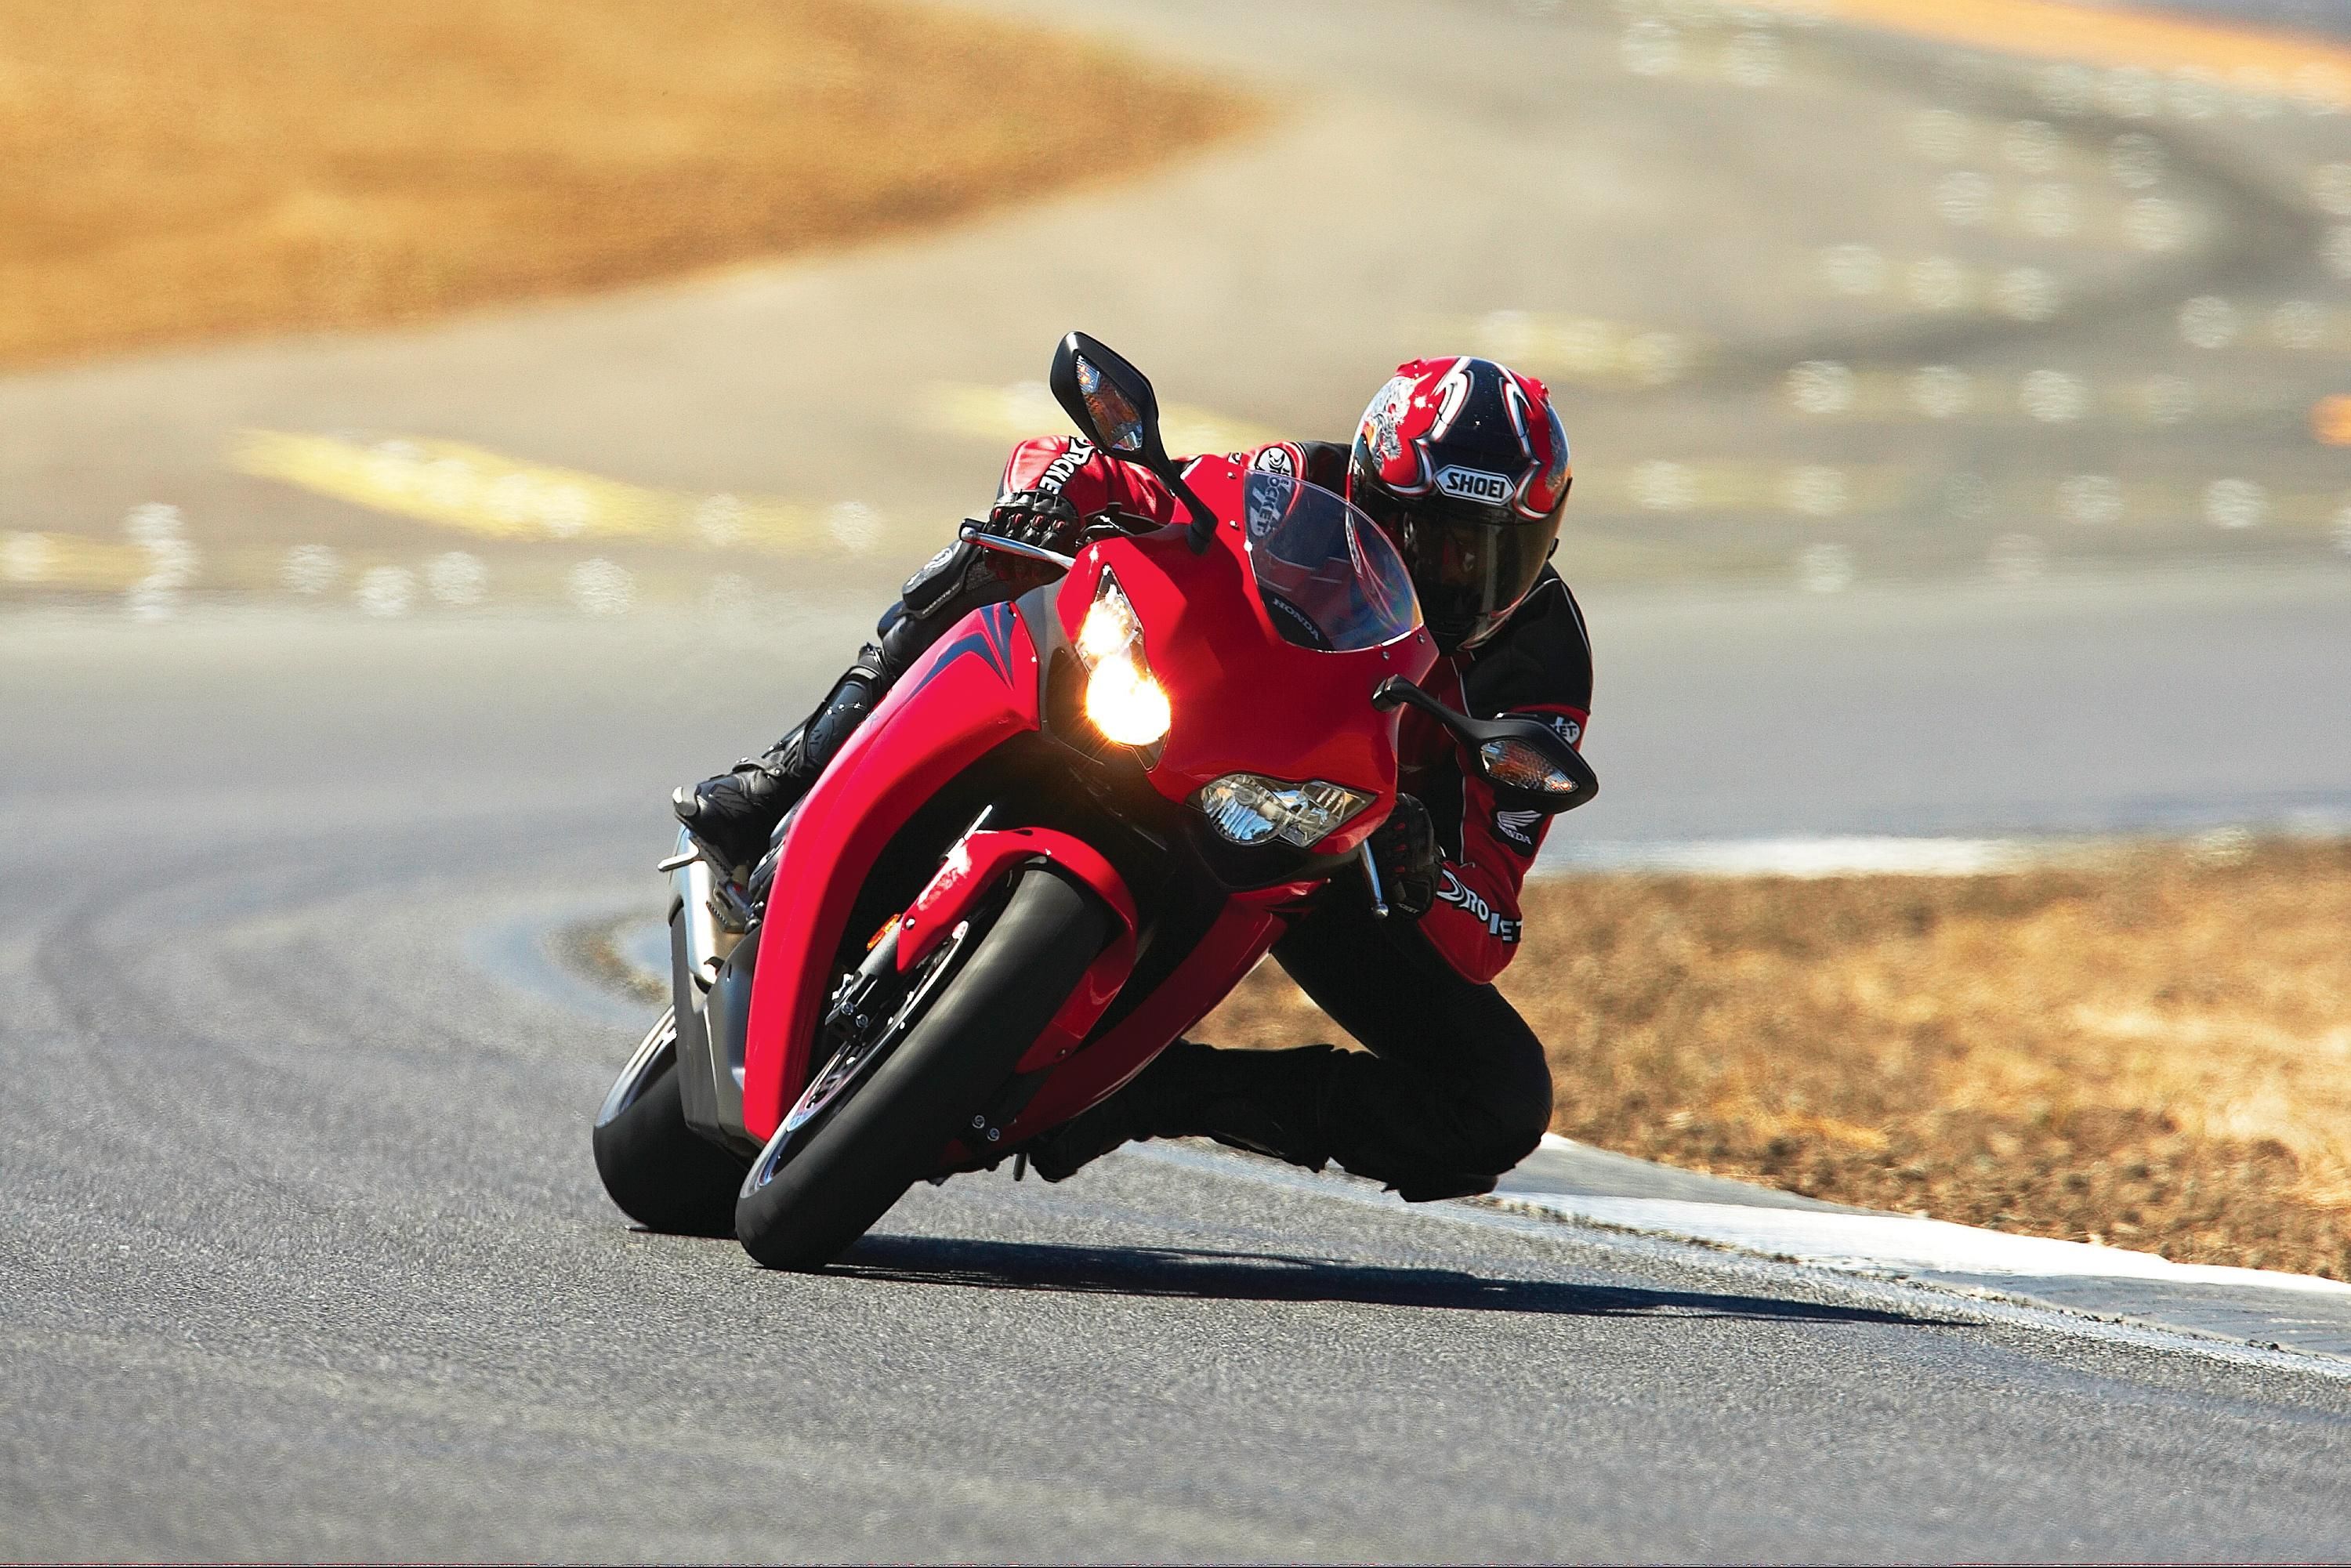  2008 Honda CBR1000RR